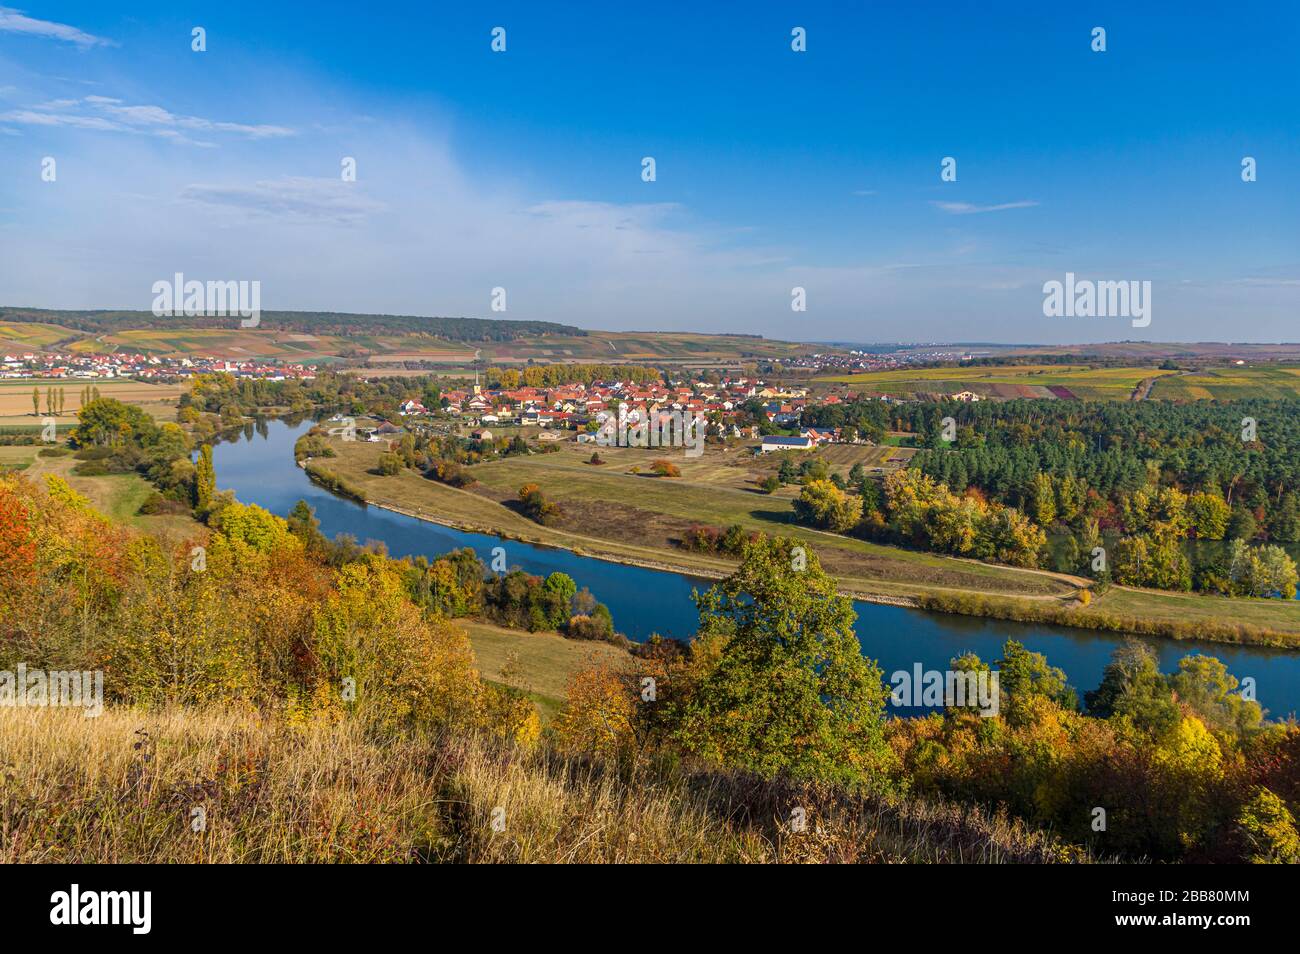 Vista sull'idilliaca Main Valley, sui vigneti, sul Main Loop nella città di Volkach, nel distretto di Fahr in autunno con foglie colorate al sole, Foto Stock